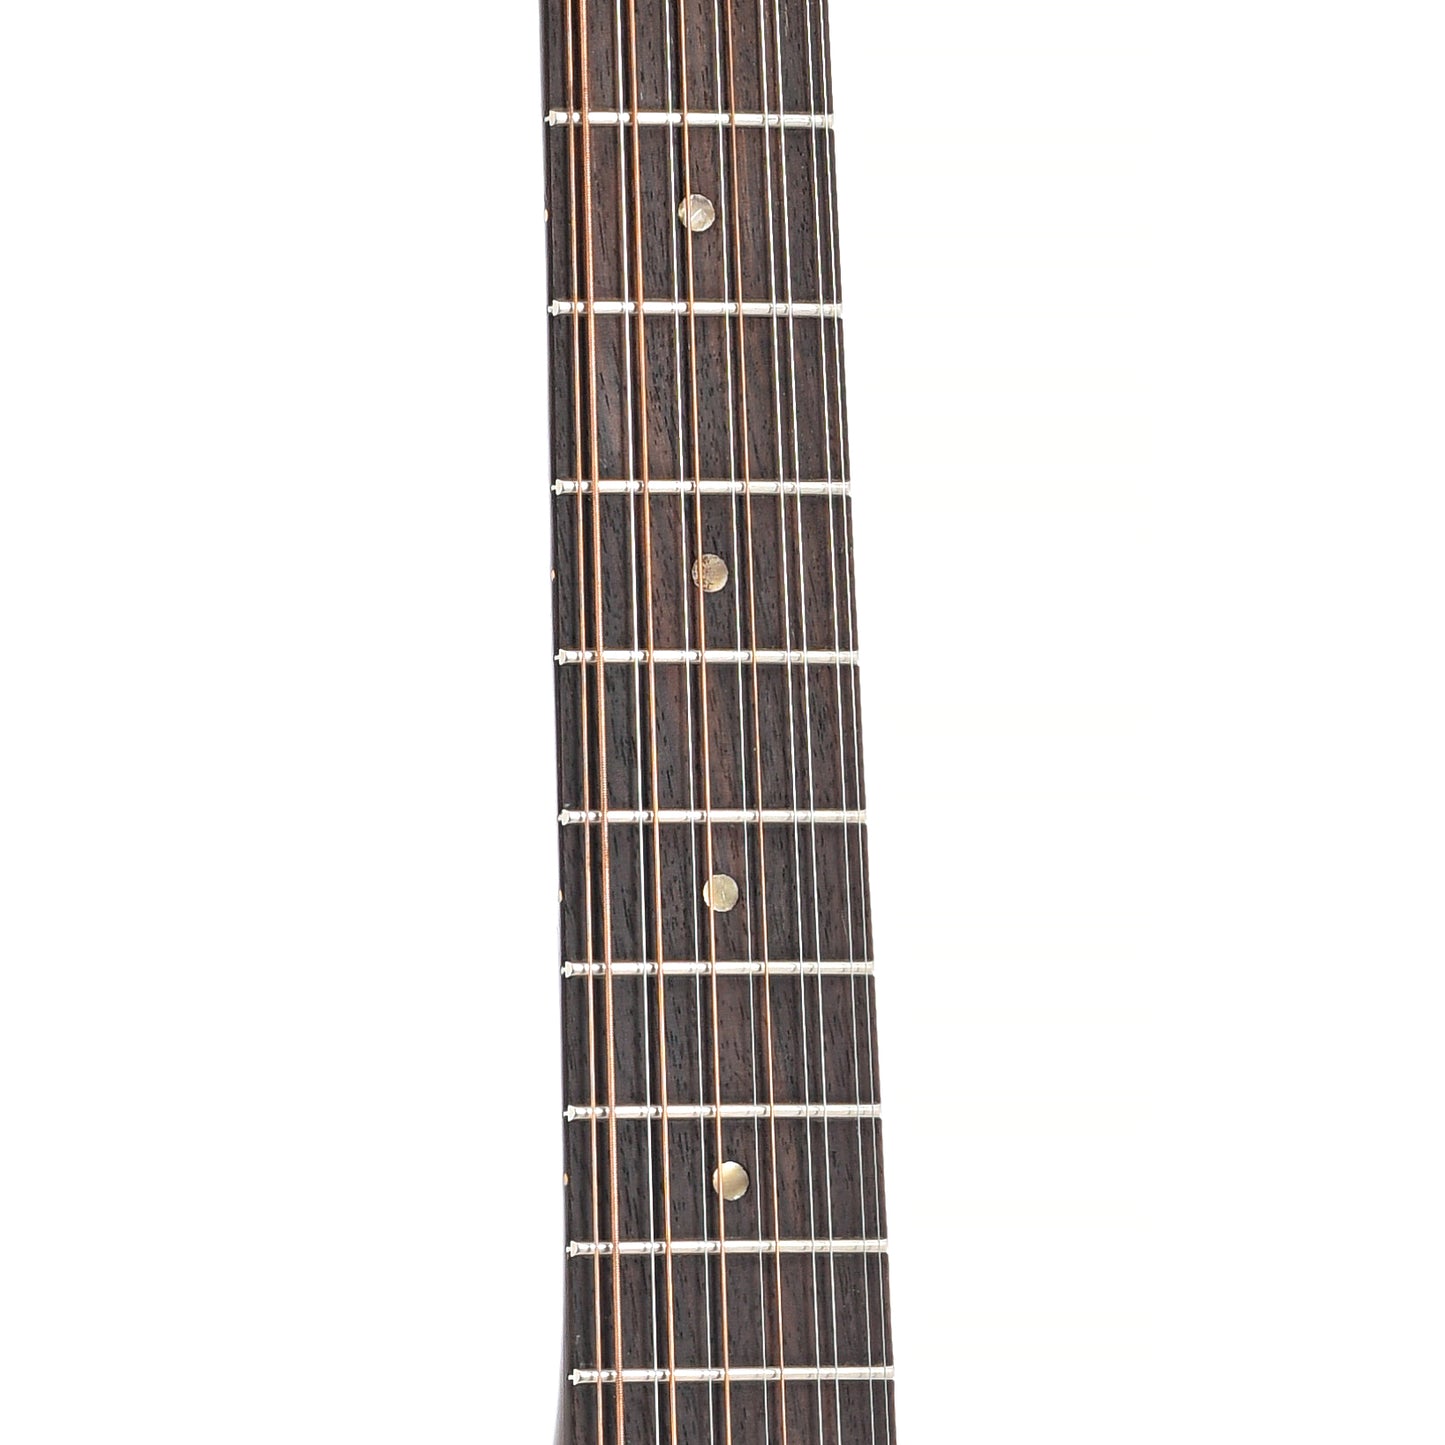 Fretboard of Gibson B25-12N 12-String guitar (c.1970)